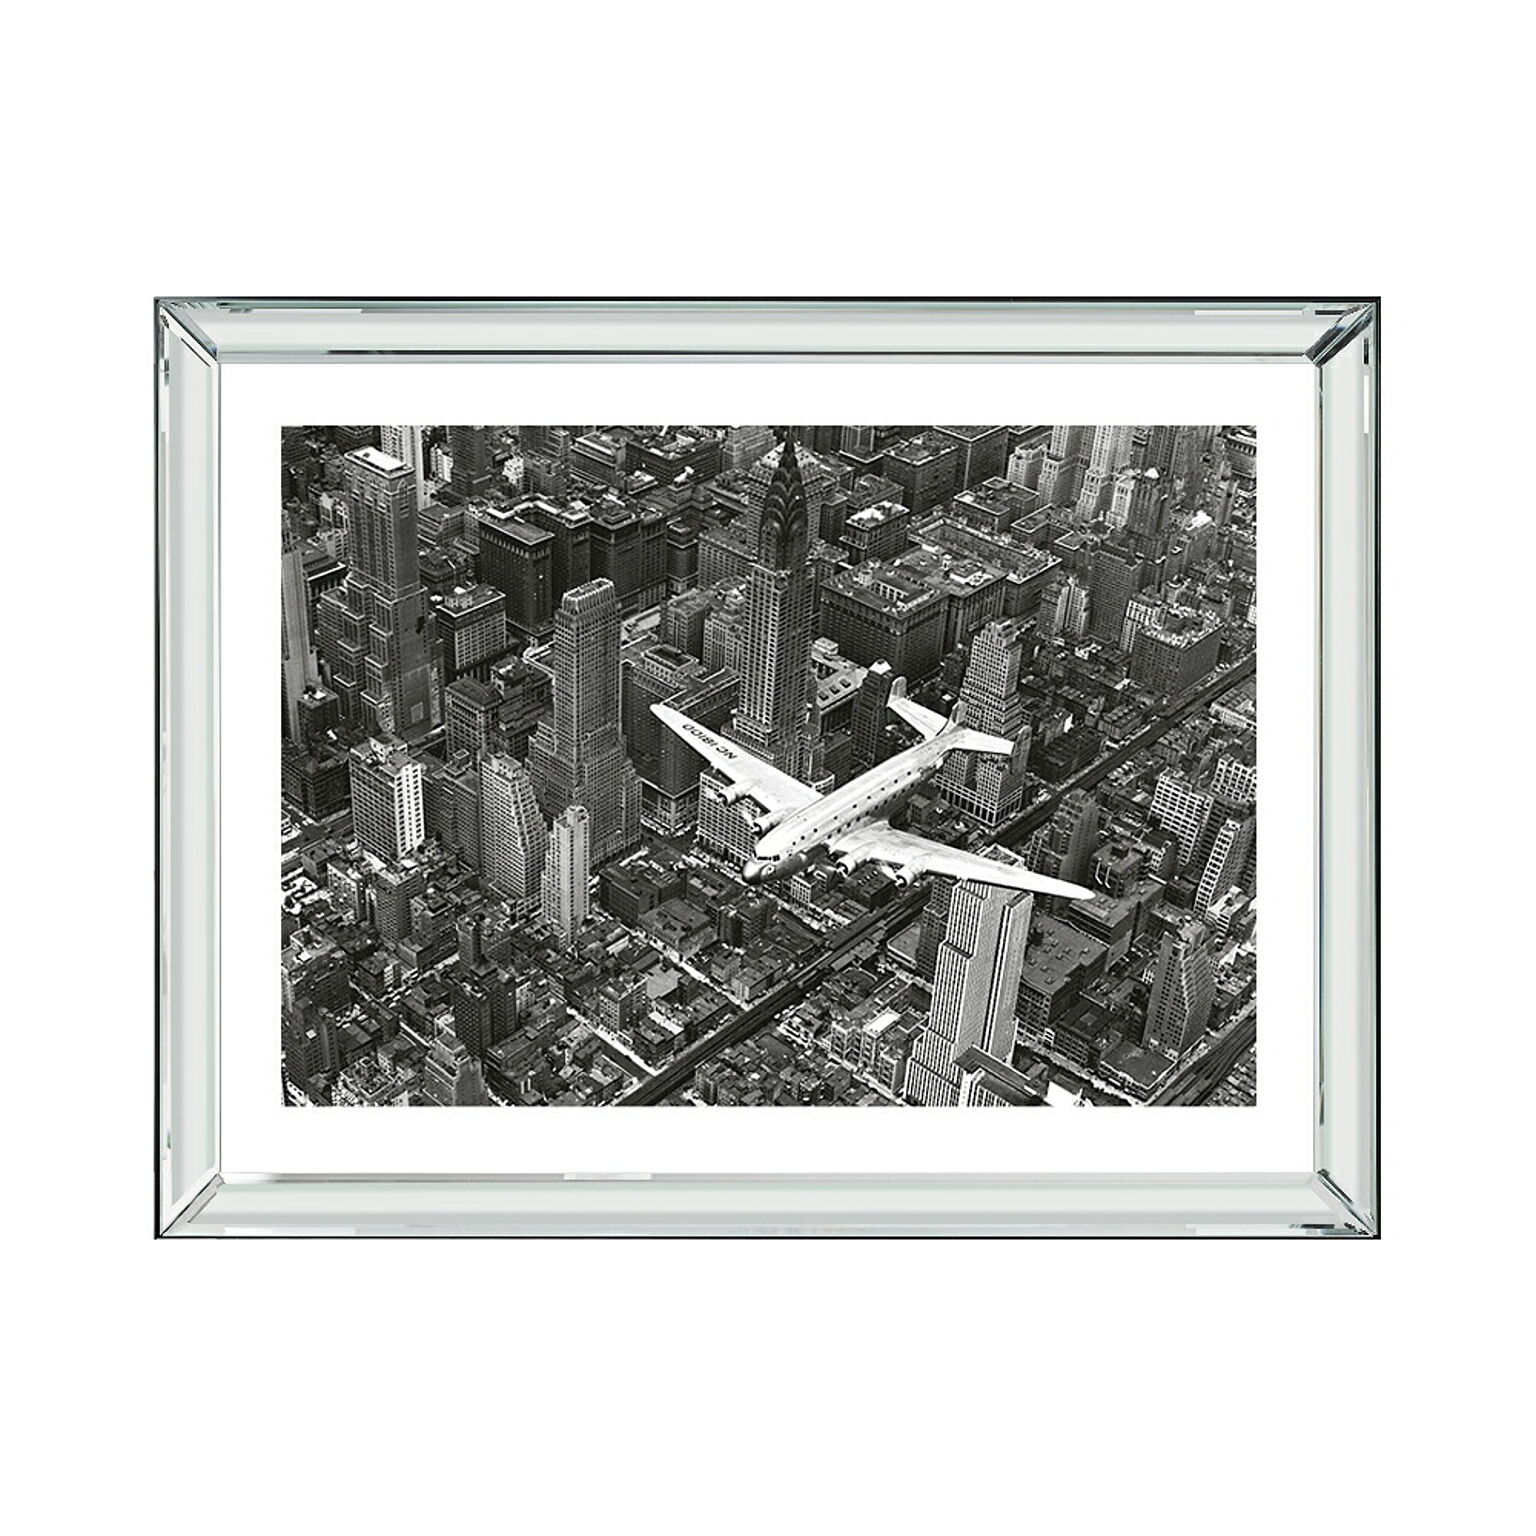 【正規輸入品】ブルックペース Brookpace Fine Arts ピクチャーアート シティ マンハッタン コレクション マンハッタン上空を飛ぶDC-4 BVL275 英国製